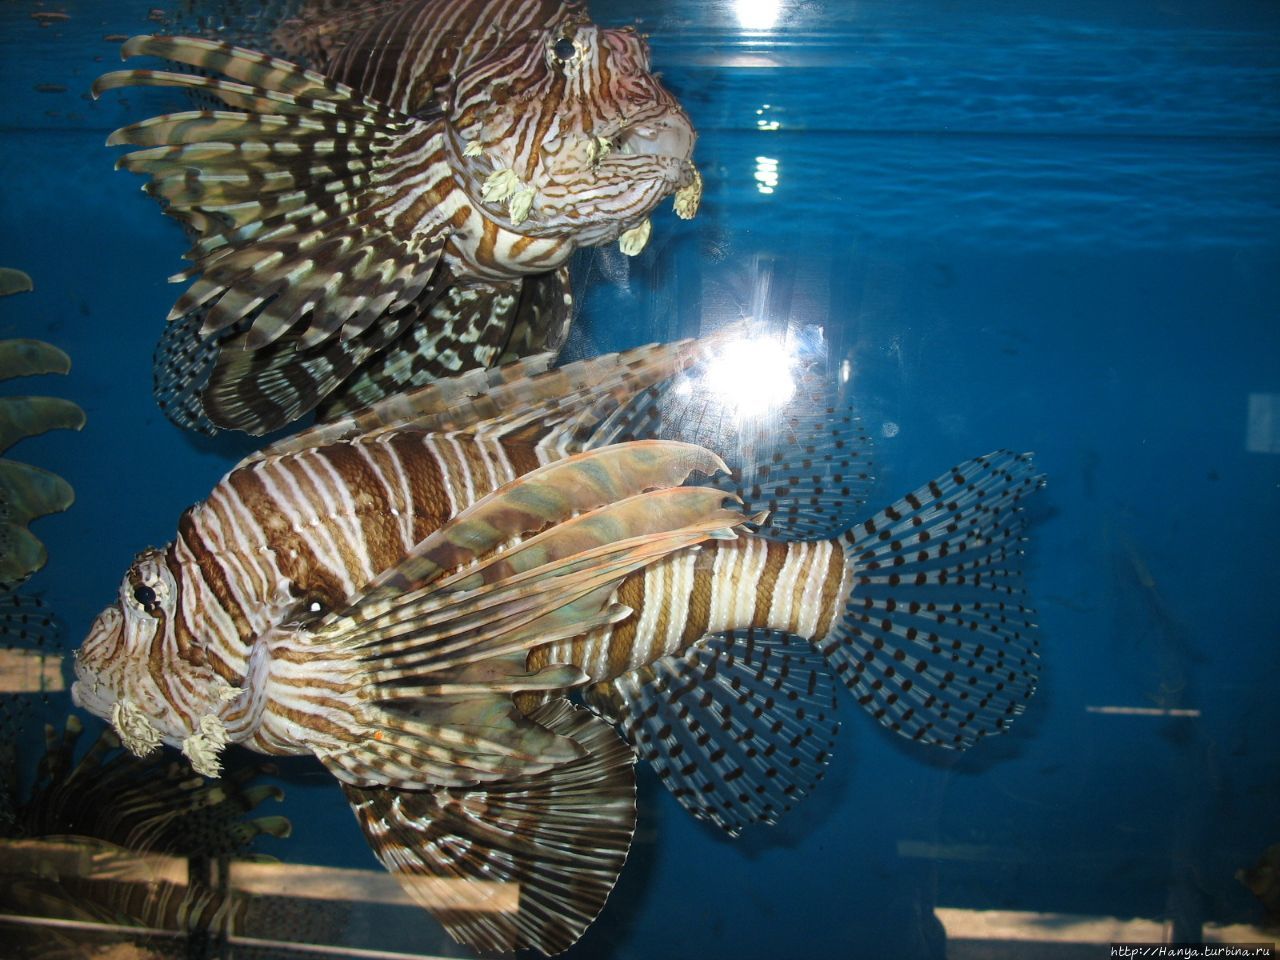 г.Нячанг. Океанографический музей. Рыба-скорпион Нячанг, Вьетнам